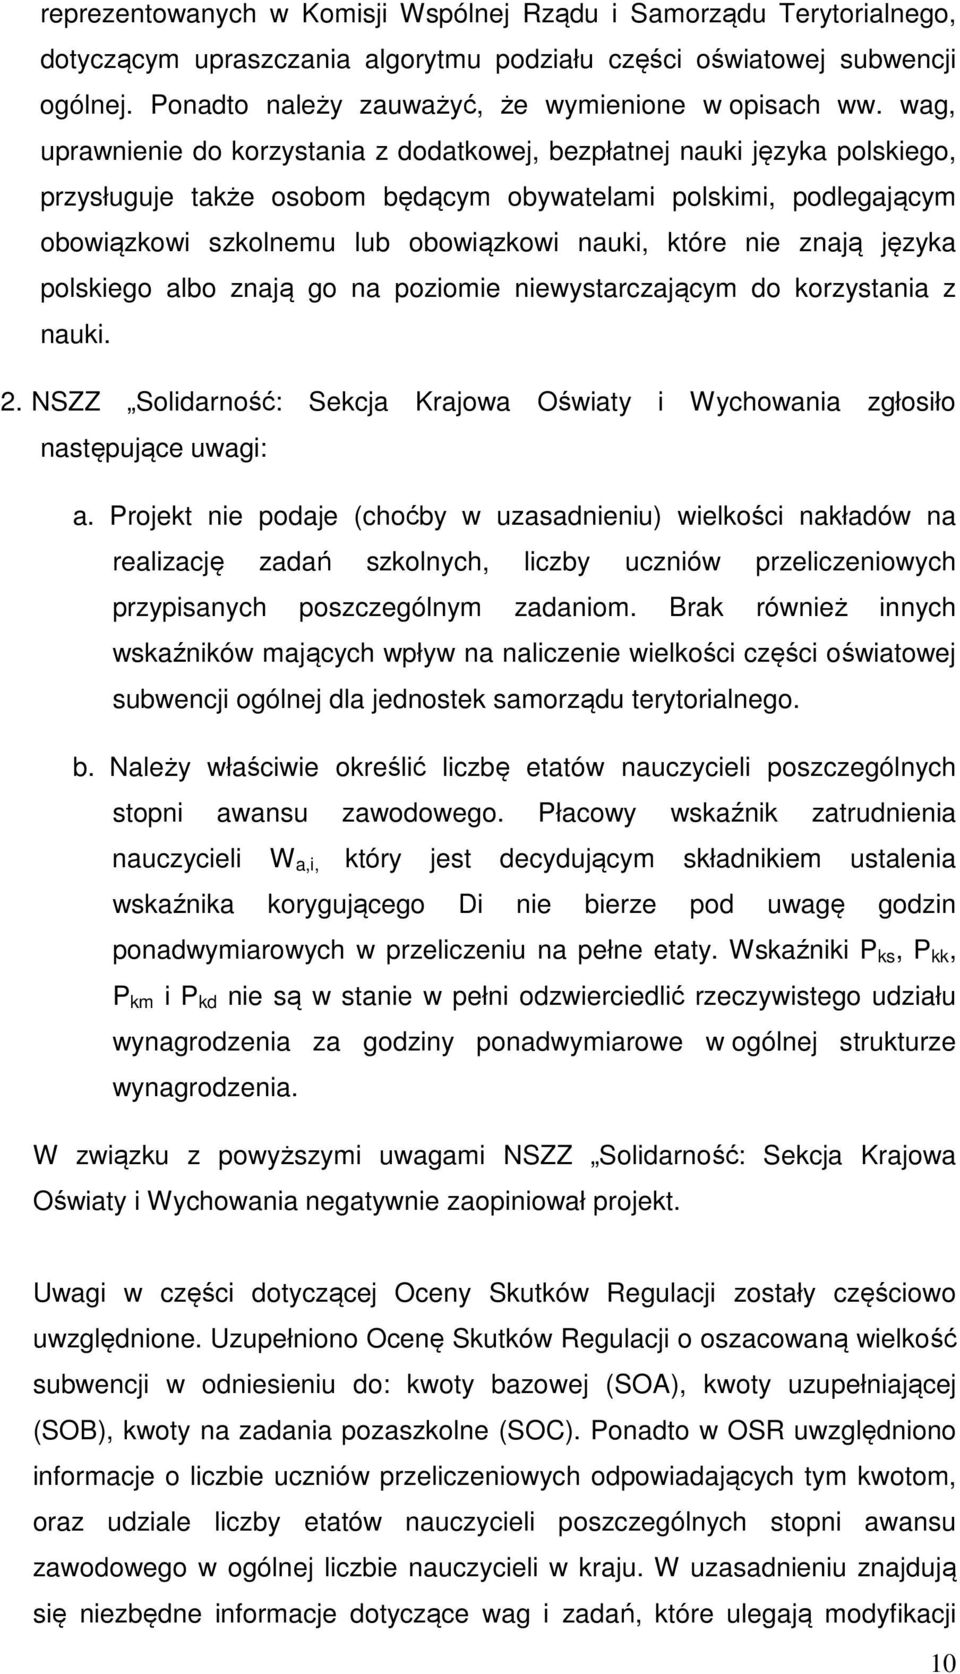 wag, uprawnienie do korzystania z dodatkowej, bezpłatnej nauki języka polskiego, przysługuje także osobom będącym obywatelami polskimi, podlegającym obowiązkowi szkolnemu lub obowiązkowi nauki, które